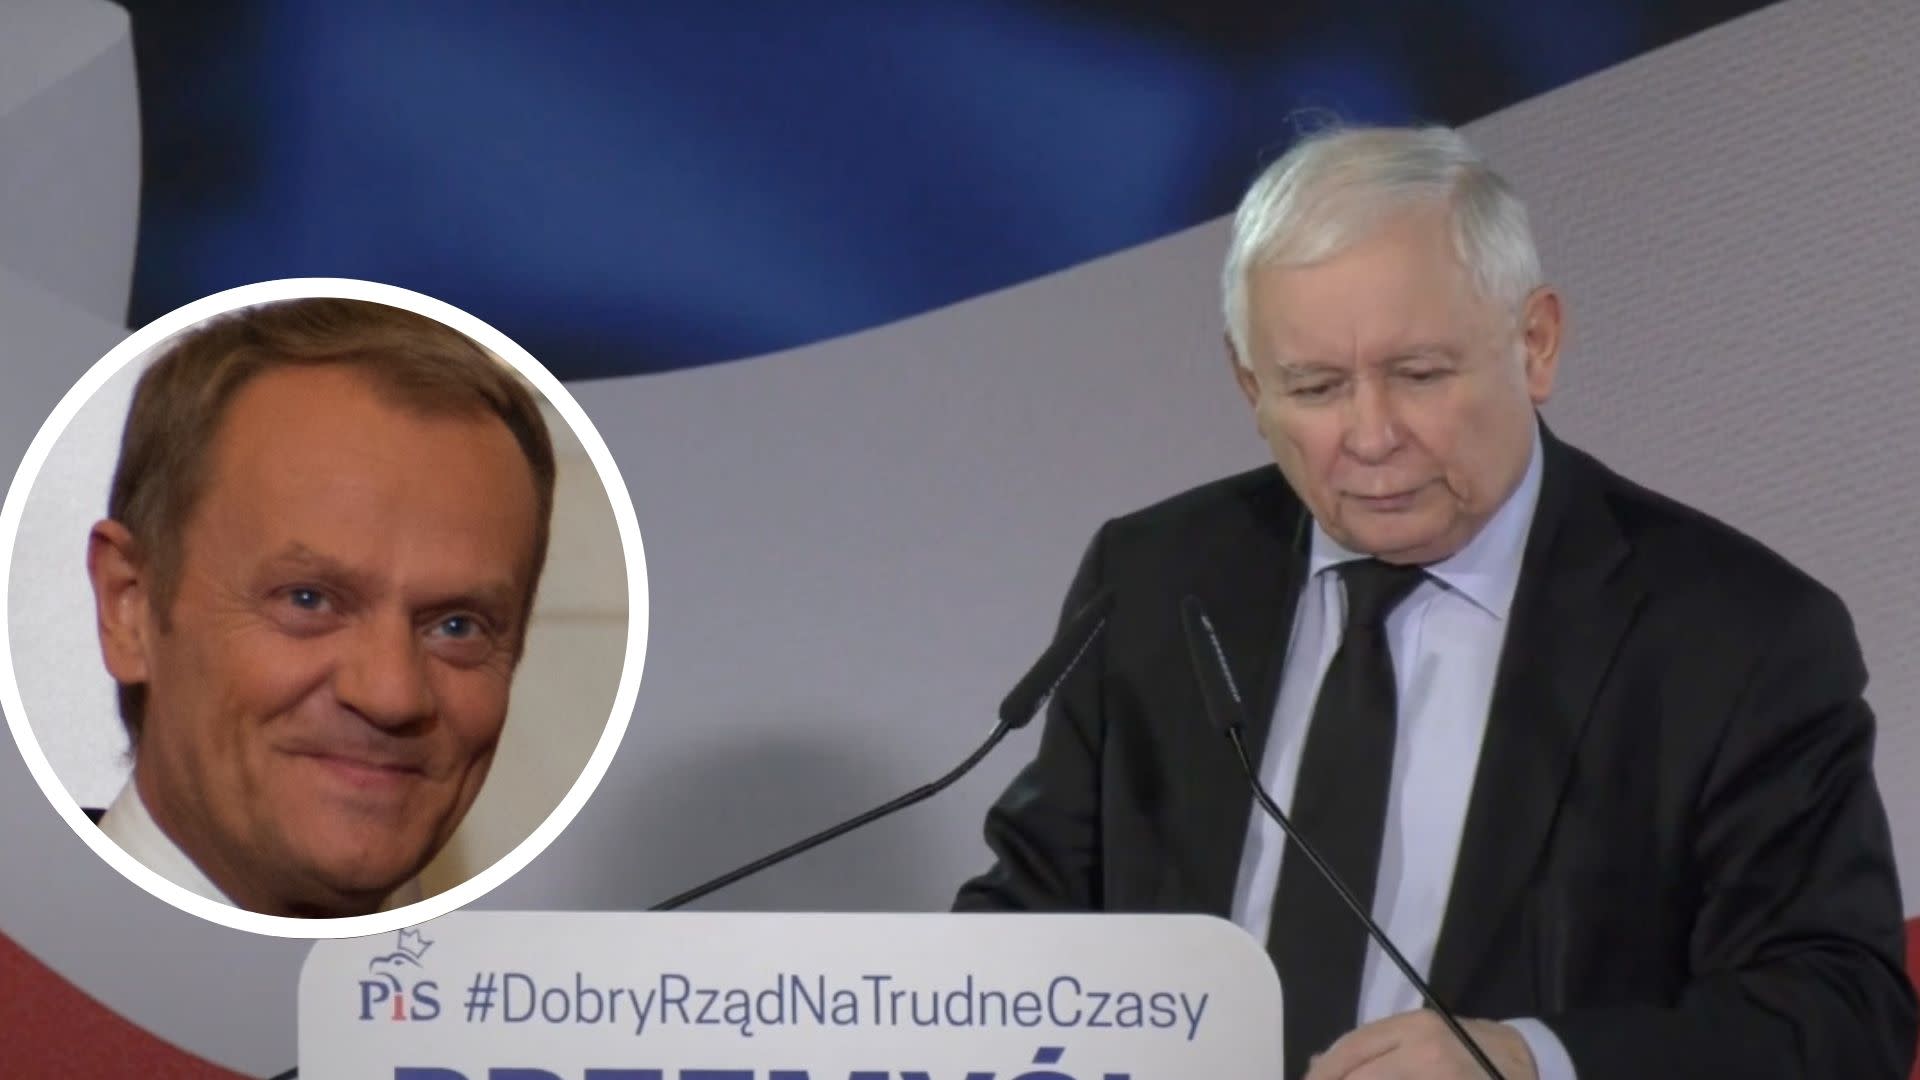 Wiadomo, kto dzieli Polaków bardziej: Donald Tusk, czy Jarosław Kaczyński. Polacy przemówili